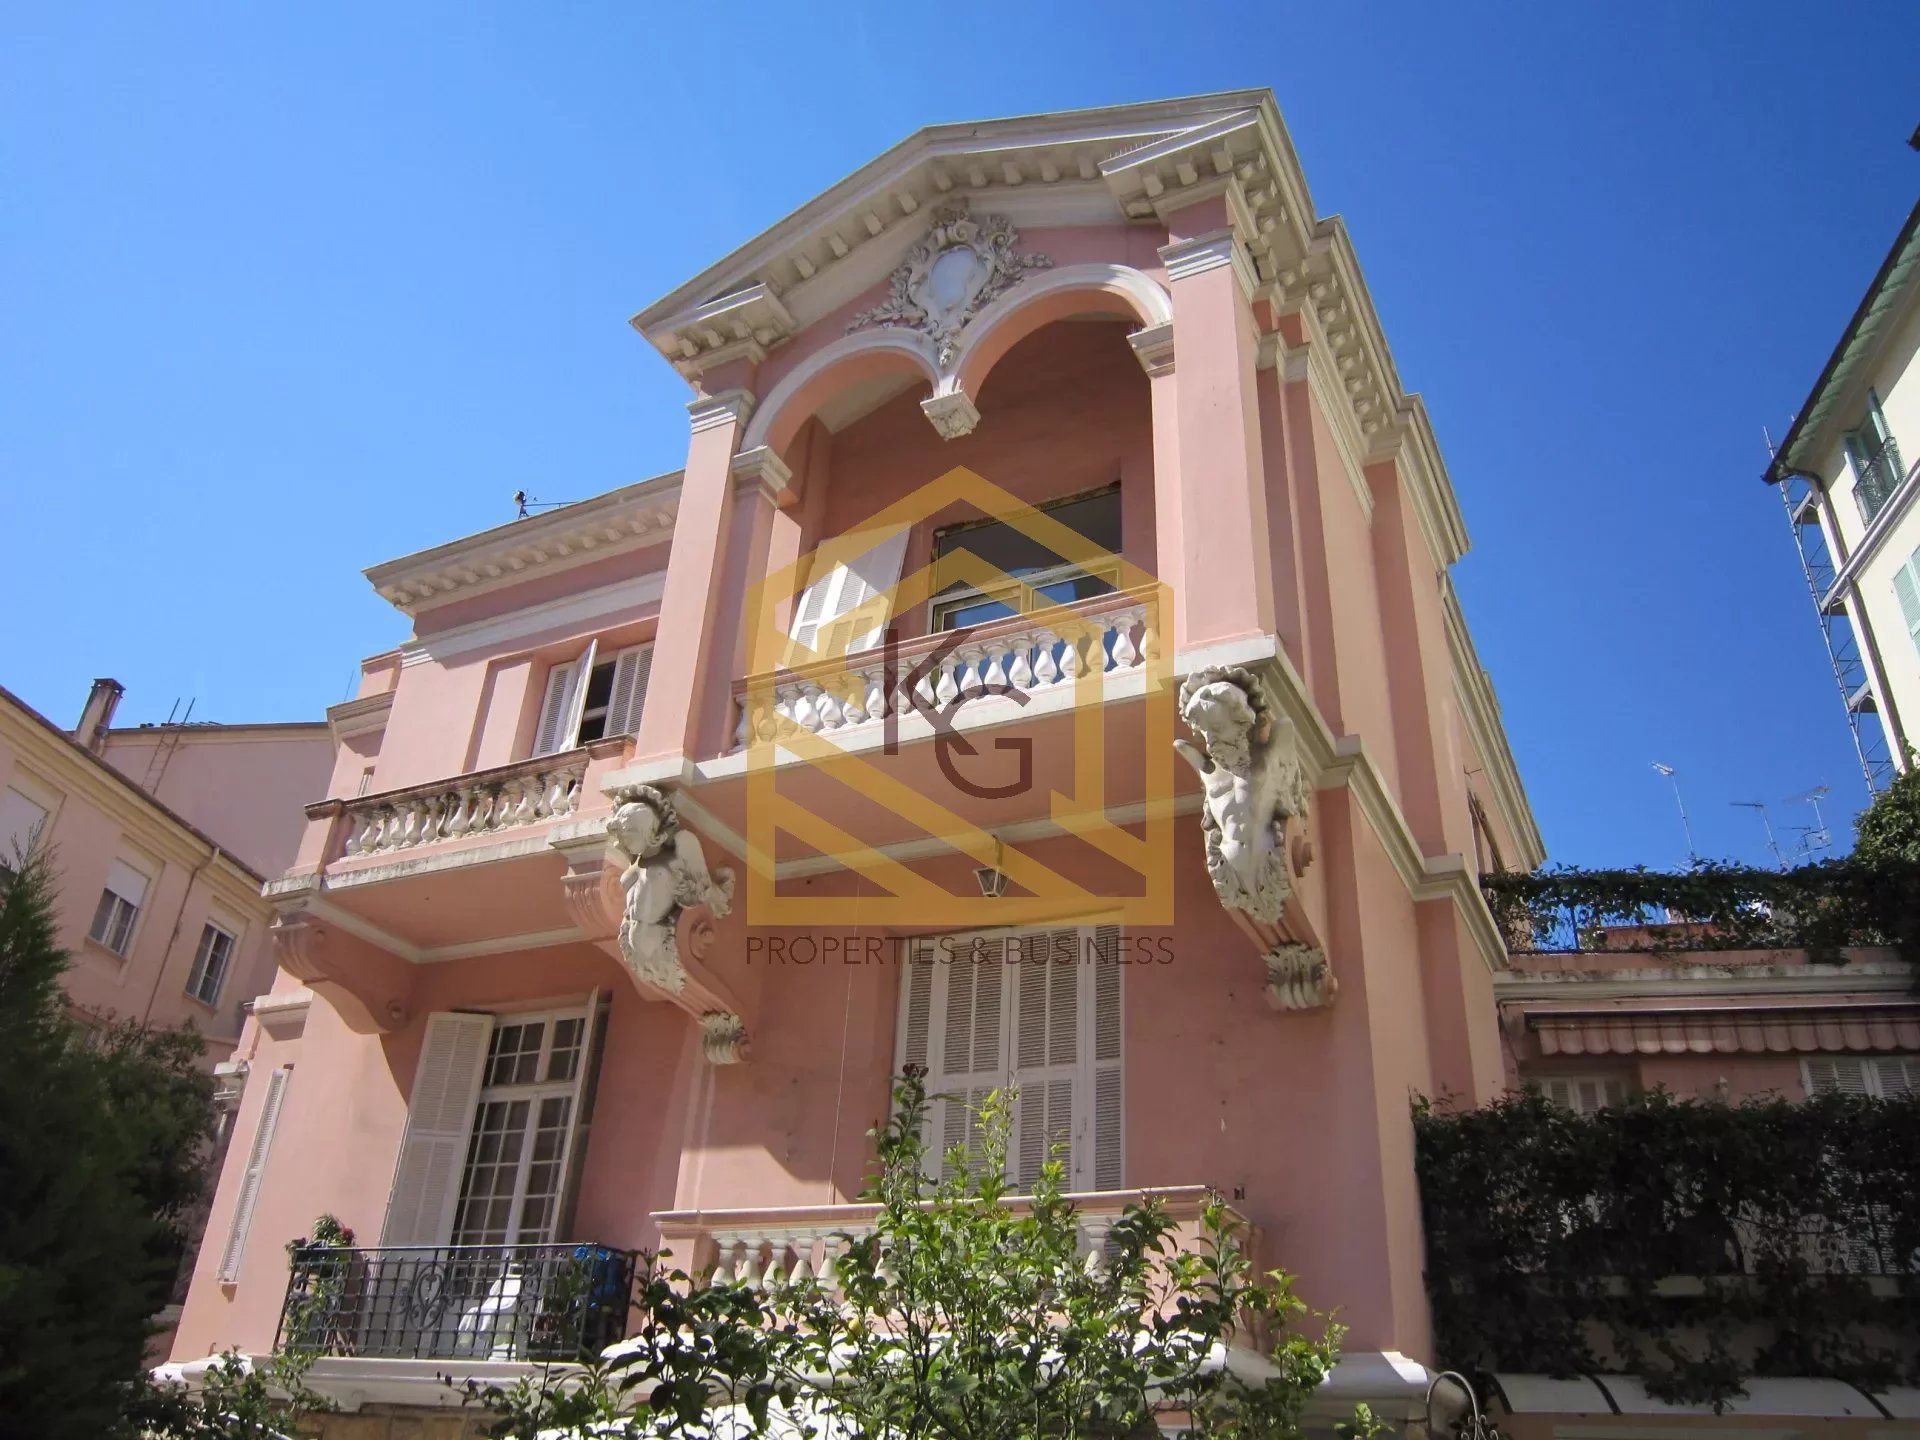 Appartement 2 pièces avec terrasse situé au cœur de Menton dans une villa belle époque.